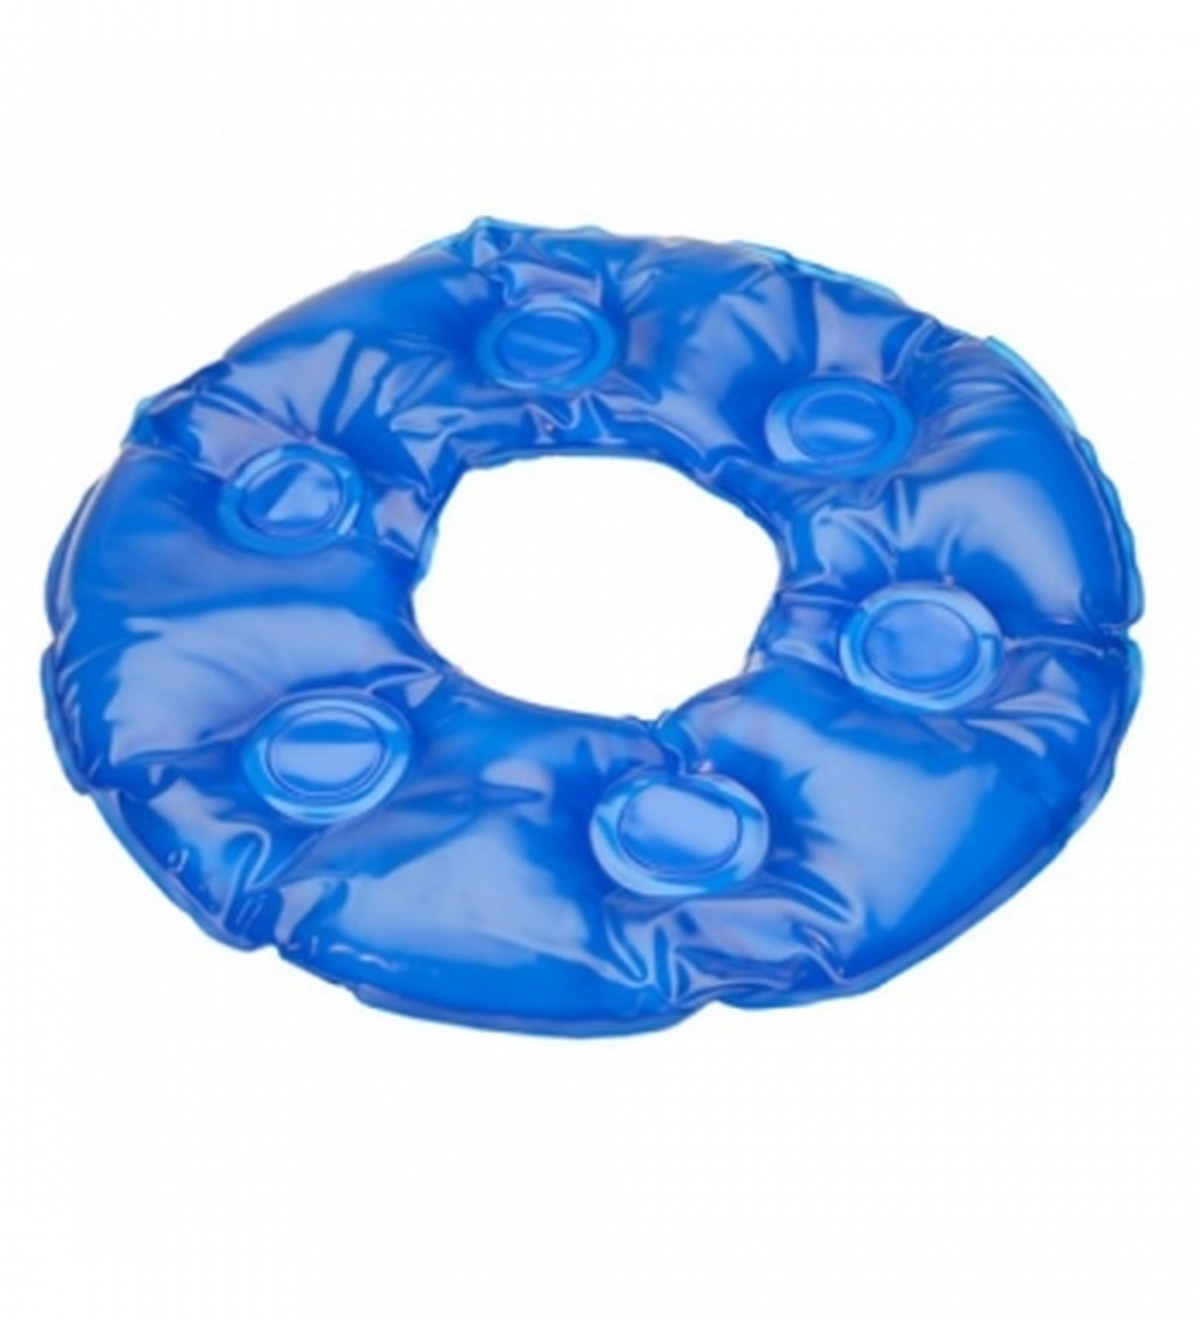 Foto do produto Almofada de gel redonda com Orificio - Ref: 1015 AG Plastico